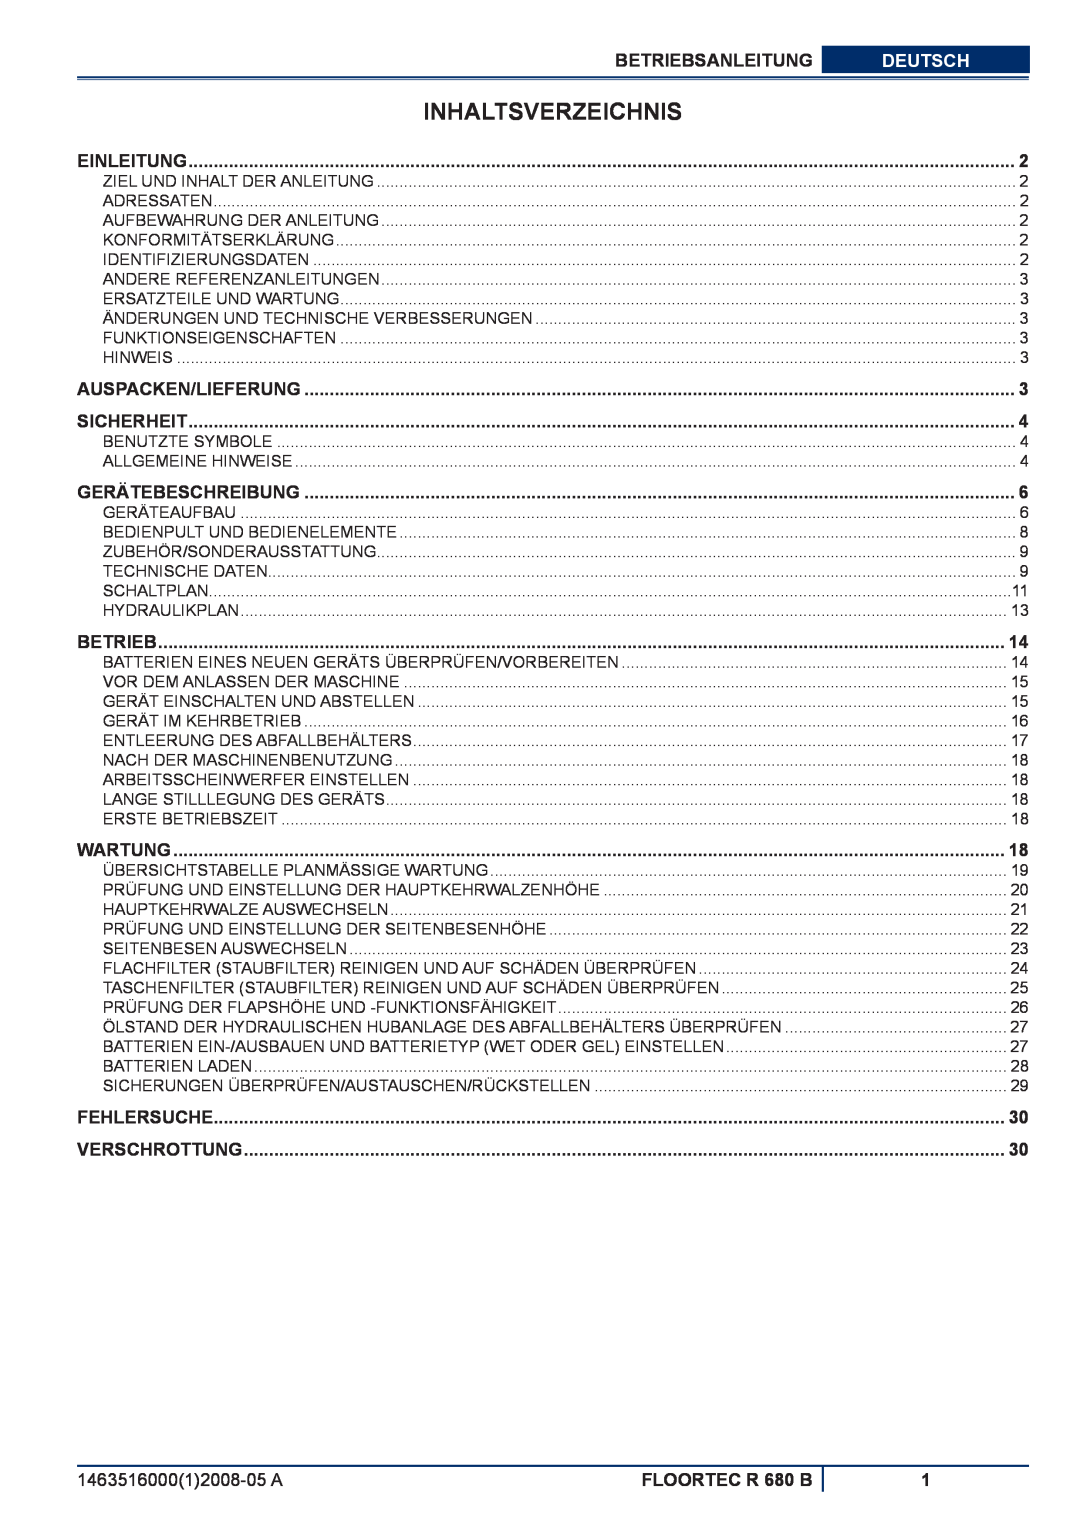 Nilfisk-ALTO manuel dutilisation Inhaltsverzeichnis, Betriebsanleitung, Deutsch, FLOORTEC R 680 B 